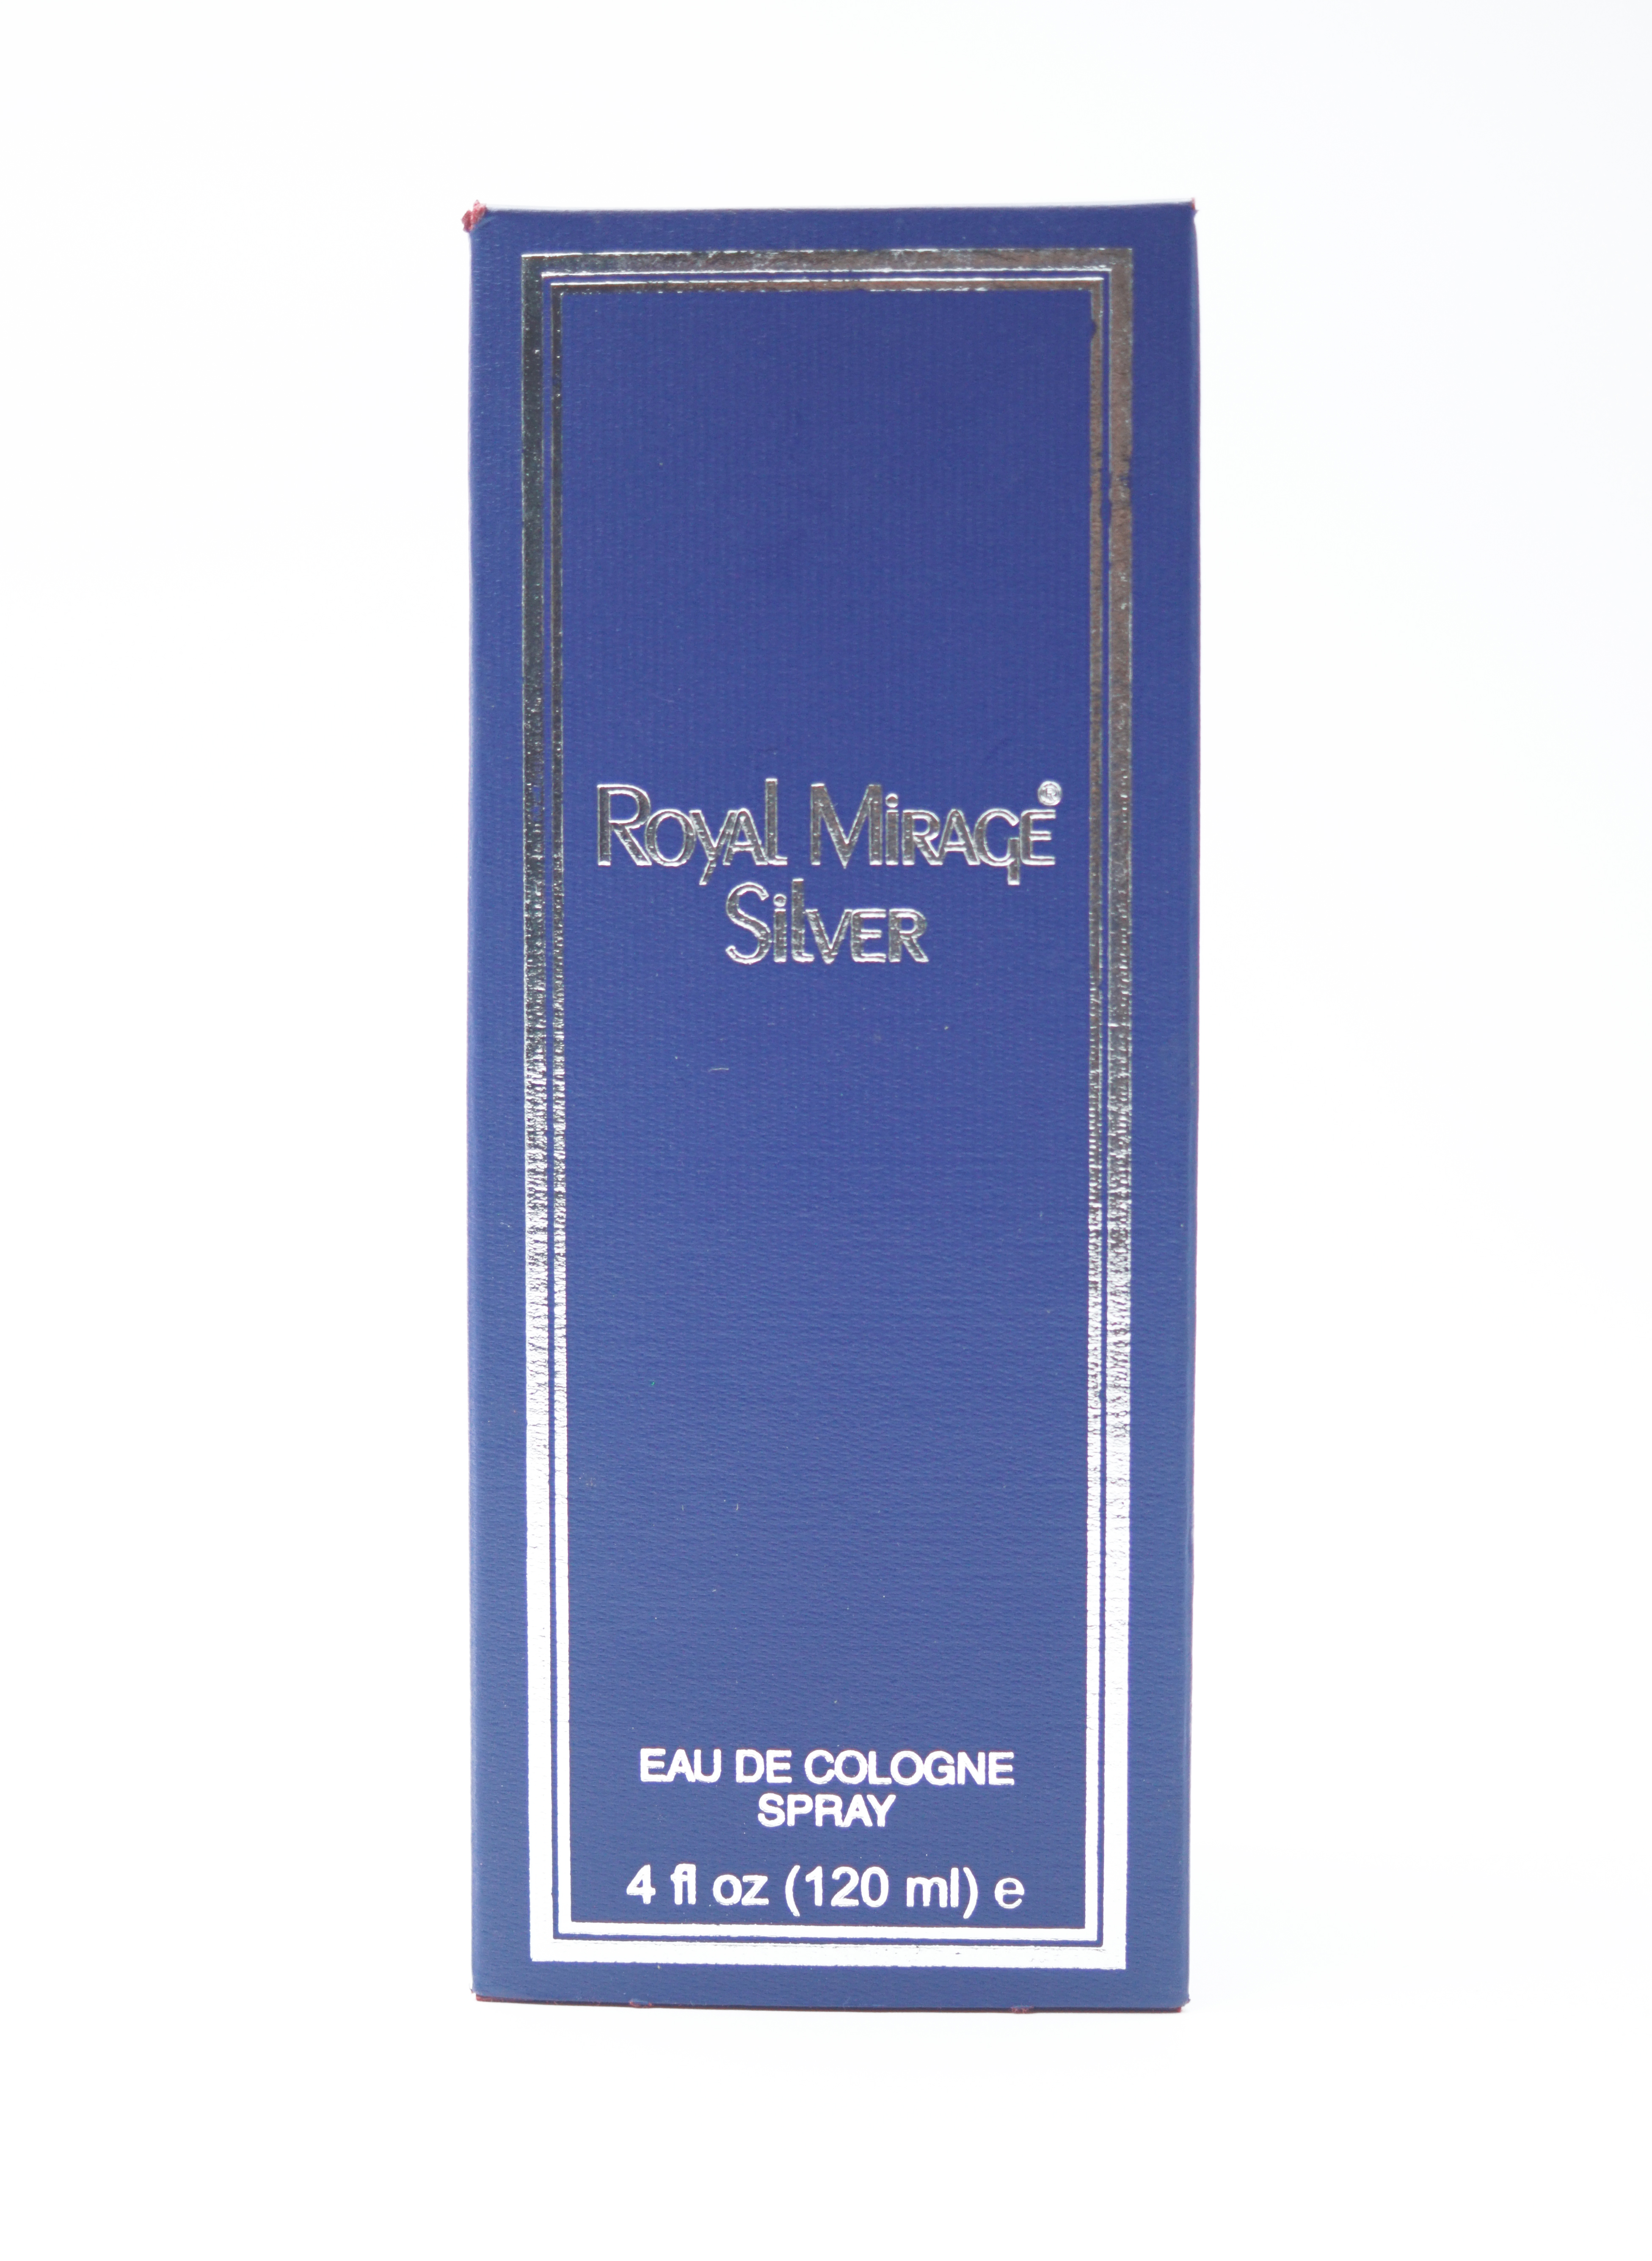 Royal Mirage Silver 120 ml Eau De Cologne Spray Perfume For Men SKU 96808